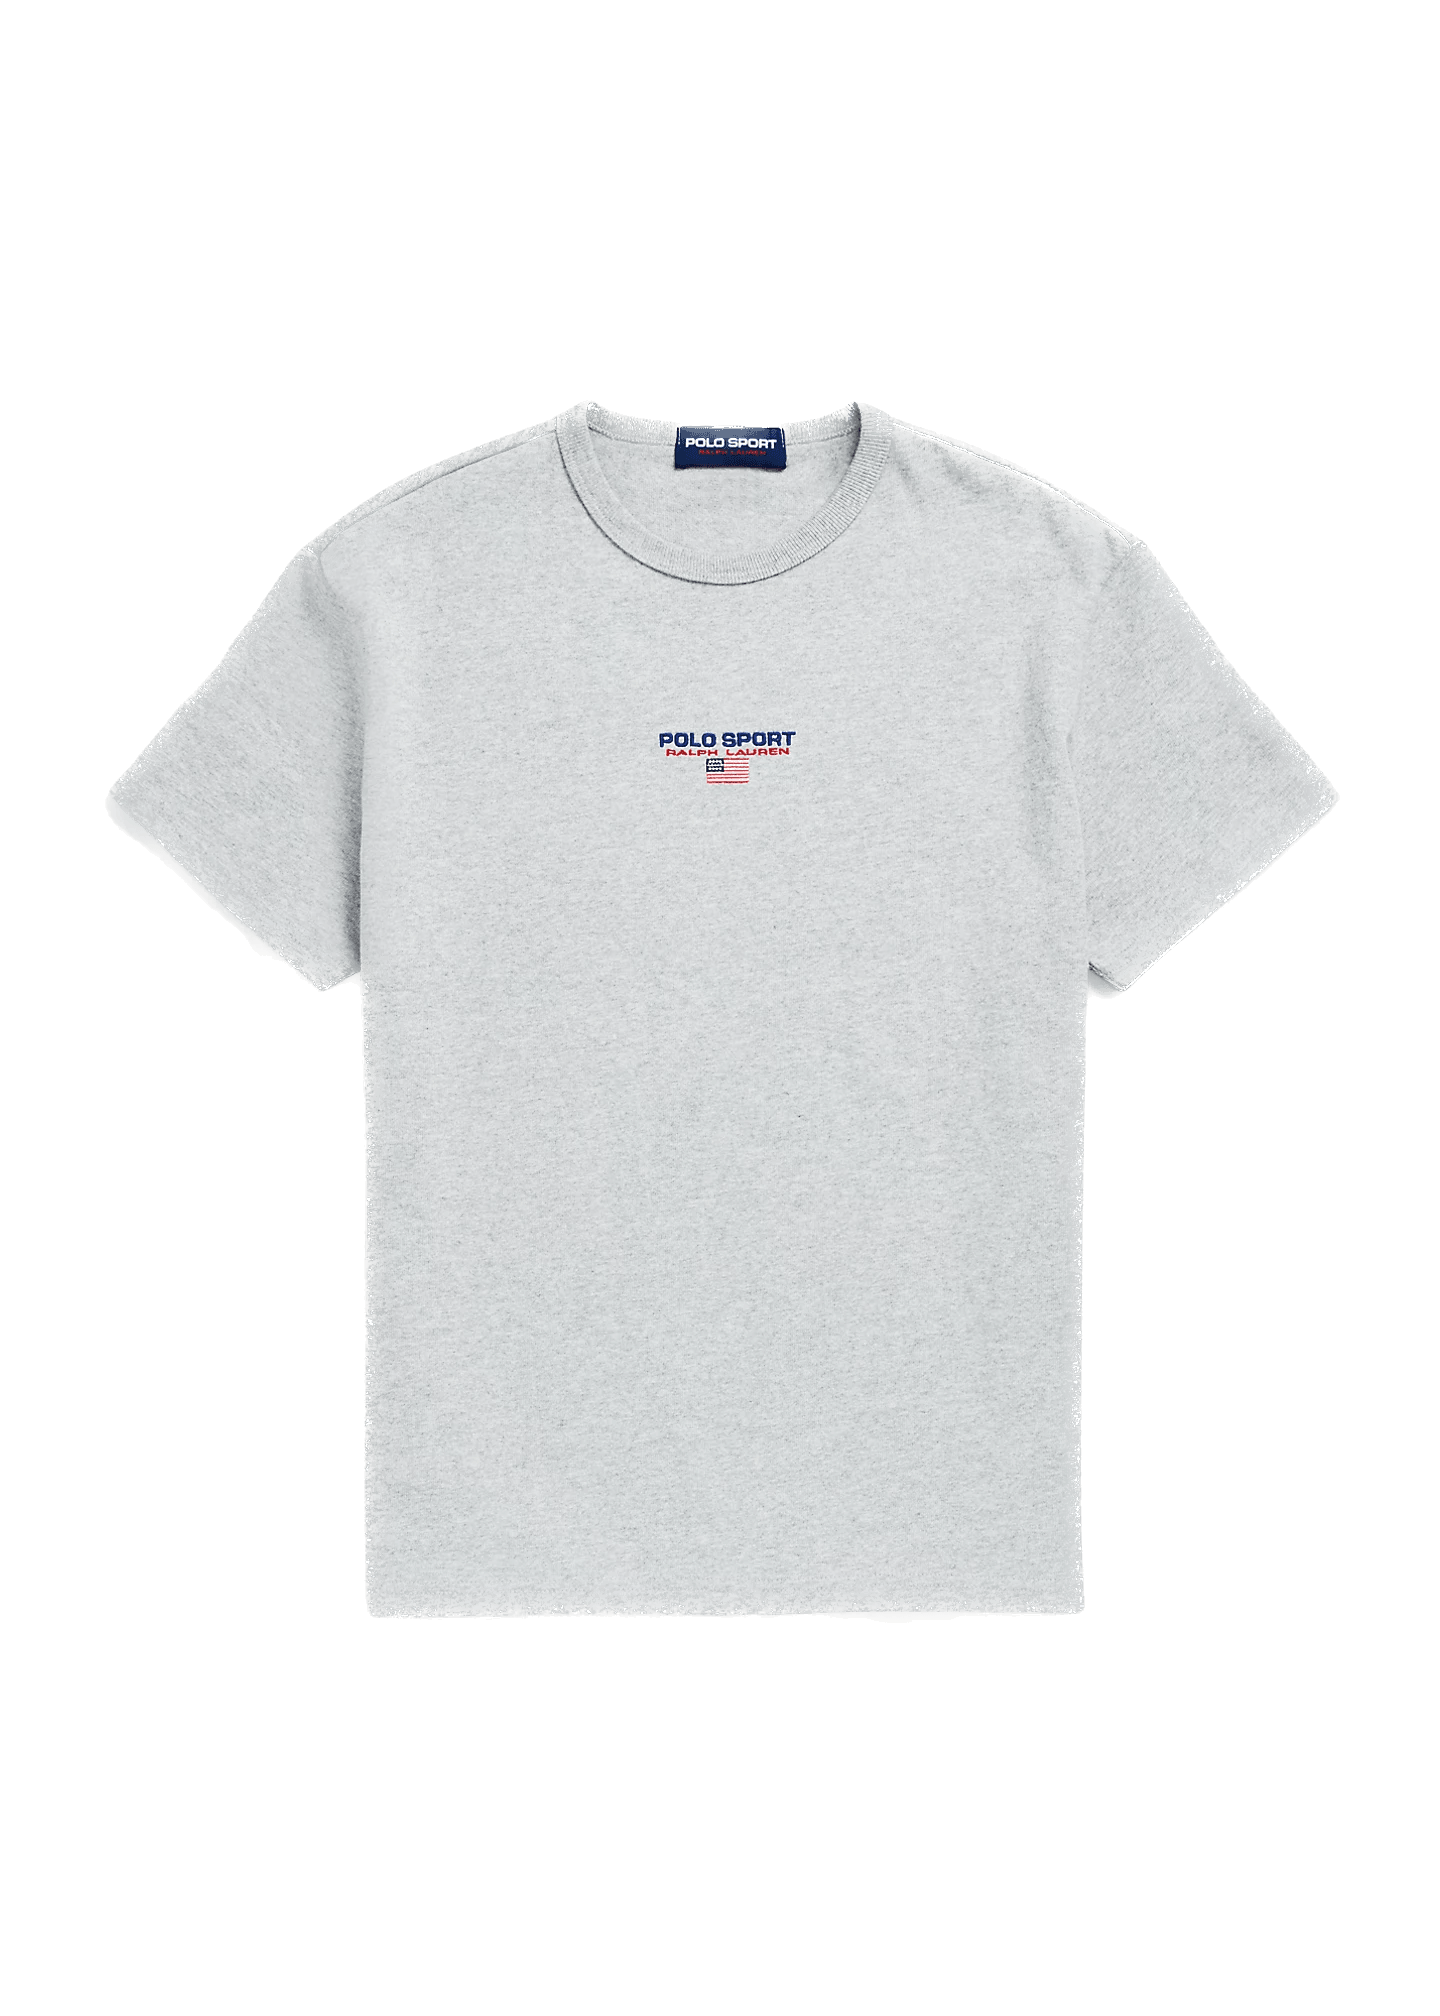 Camiseta Polo Ralph Lauren Classic Fit de punto Polo Sport Gris - ECRU